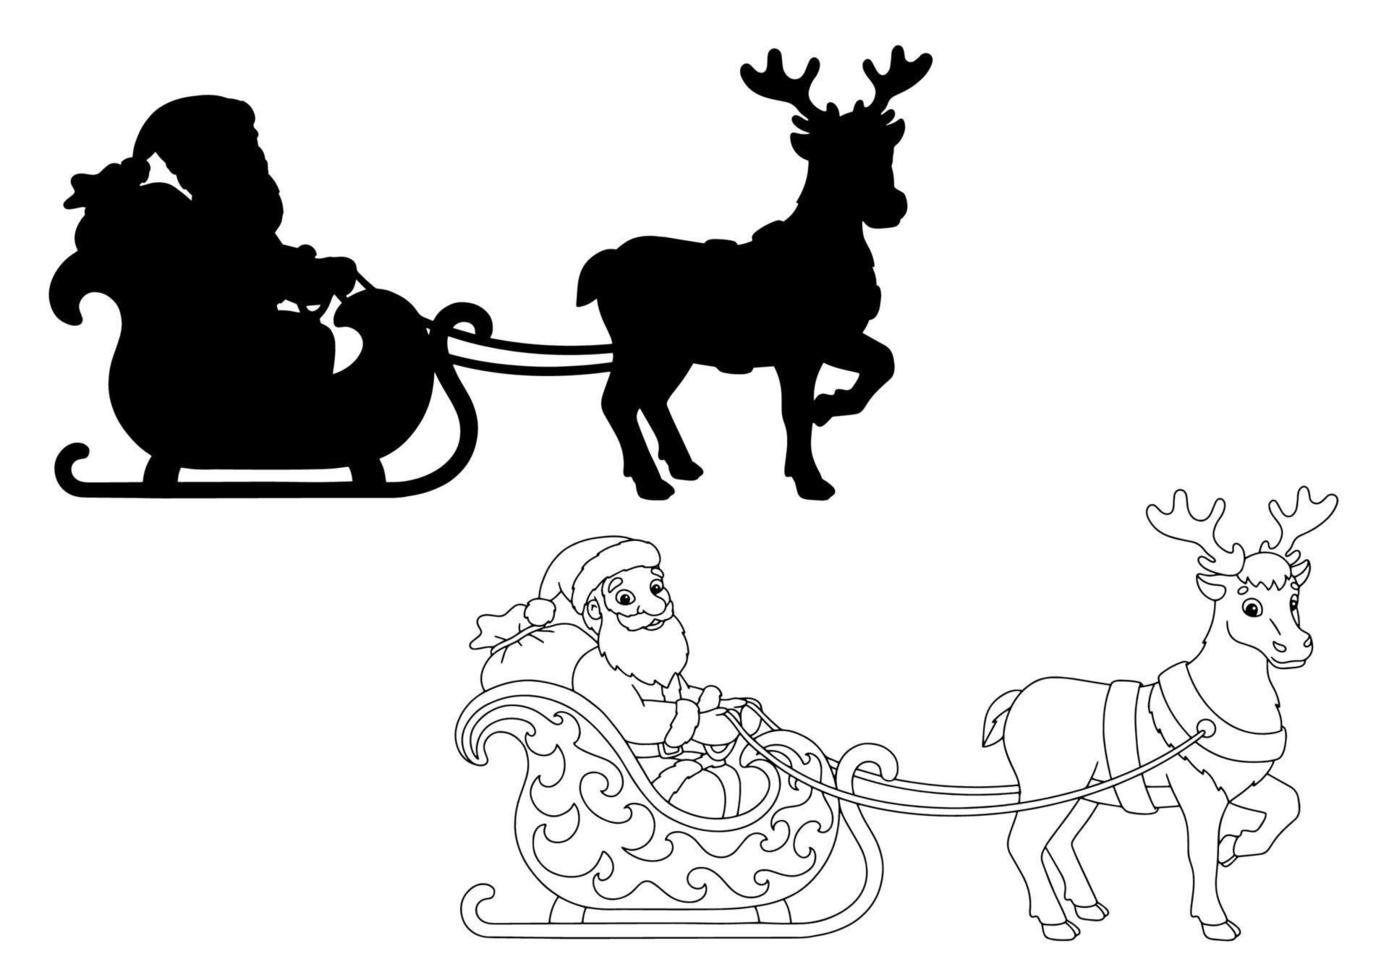 Babbo Natale porta i regali di Natale su una slitta trainata da renne. sagoma nera. elemento di design. illustrazione vettoriale isolato su sfondo bianco. modello per libri, adesivi, poster, cartoline, vestiti.